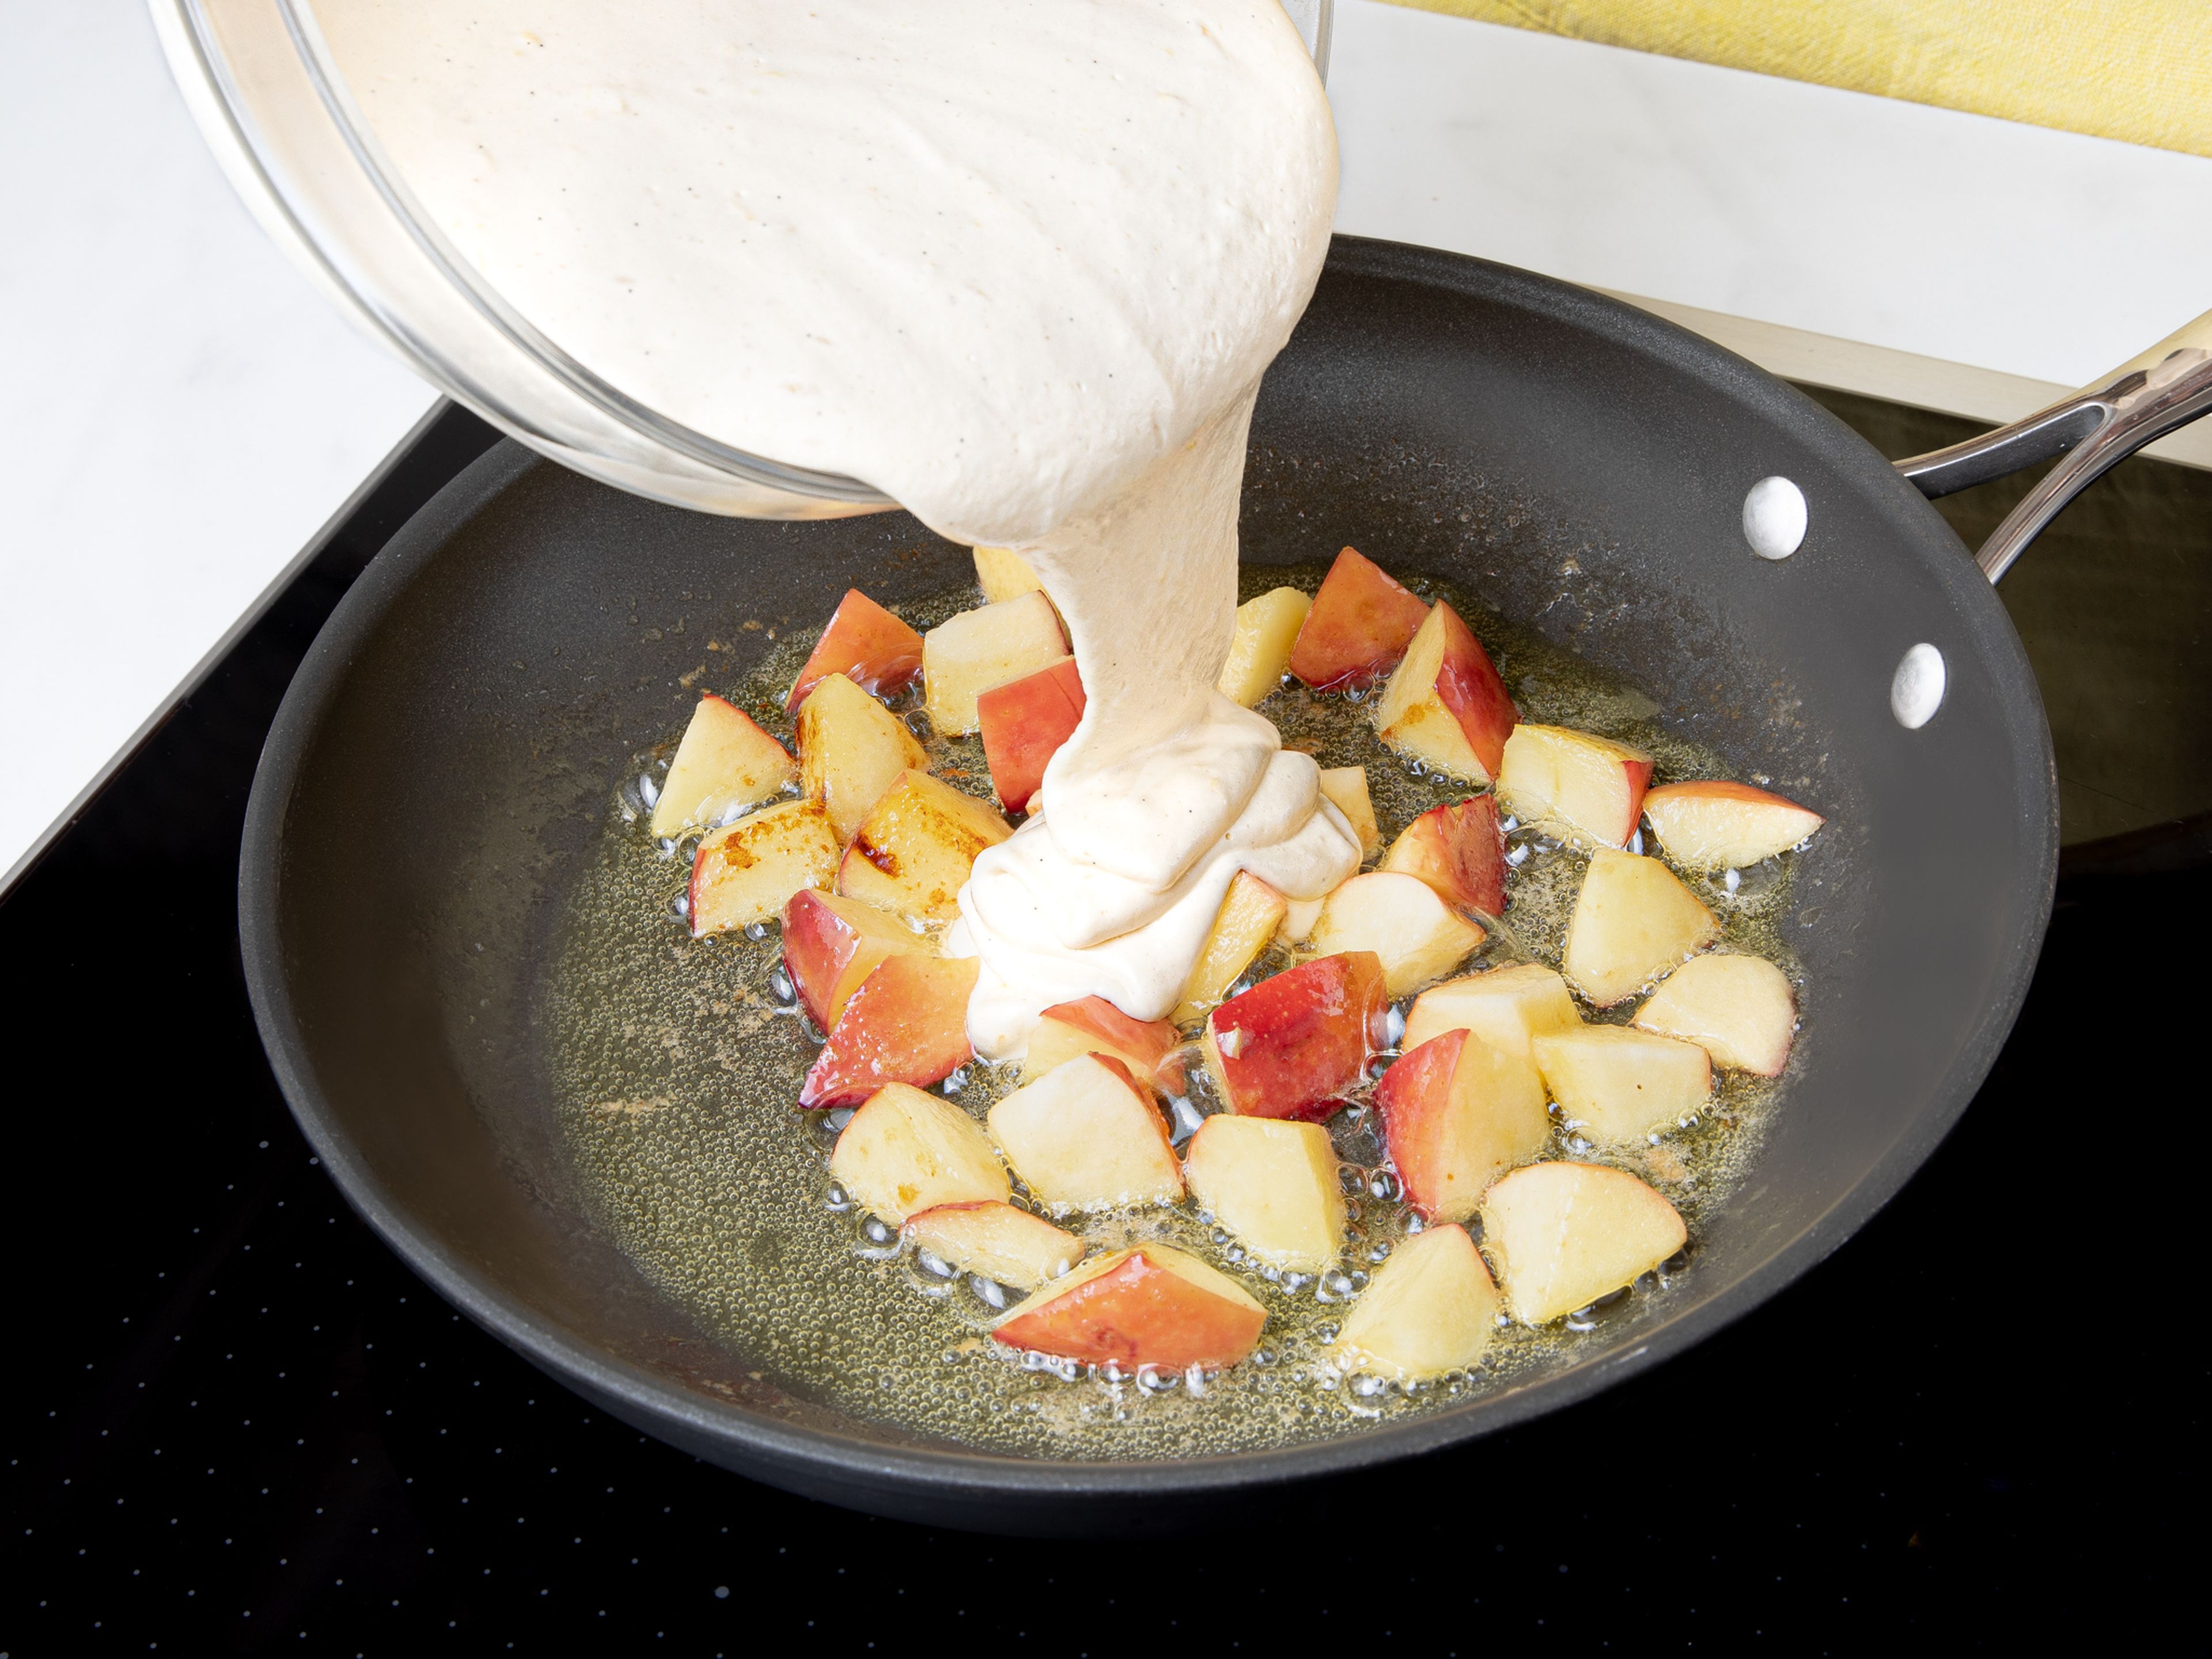 Backofen auf 200°C Umluft mit Grill vorheizen. Die Hälfte der Butter bei mittlerer Hitze in einer ofenfesten Pfanne schmelzen, Apfelstücke zugeben und für ca. 3 Min. andünsten. Die Hitze etwas reduzieren und den Teig auf die Äpfel in die Pfanne geben. Mandelstifte und Rosinen darüberstreuen.